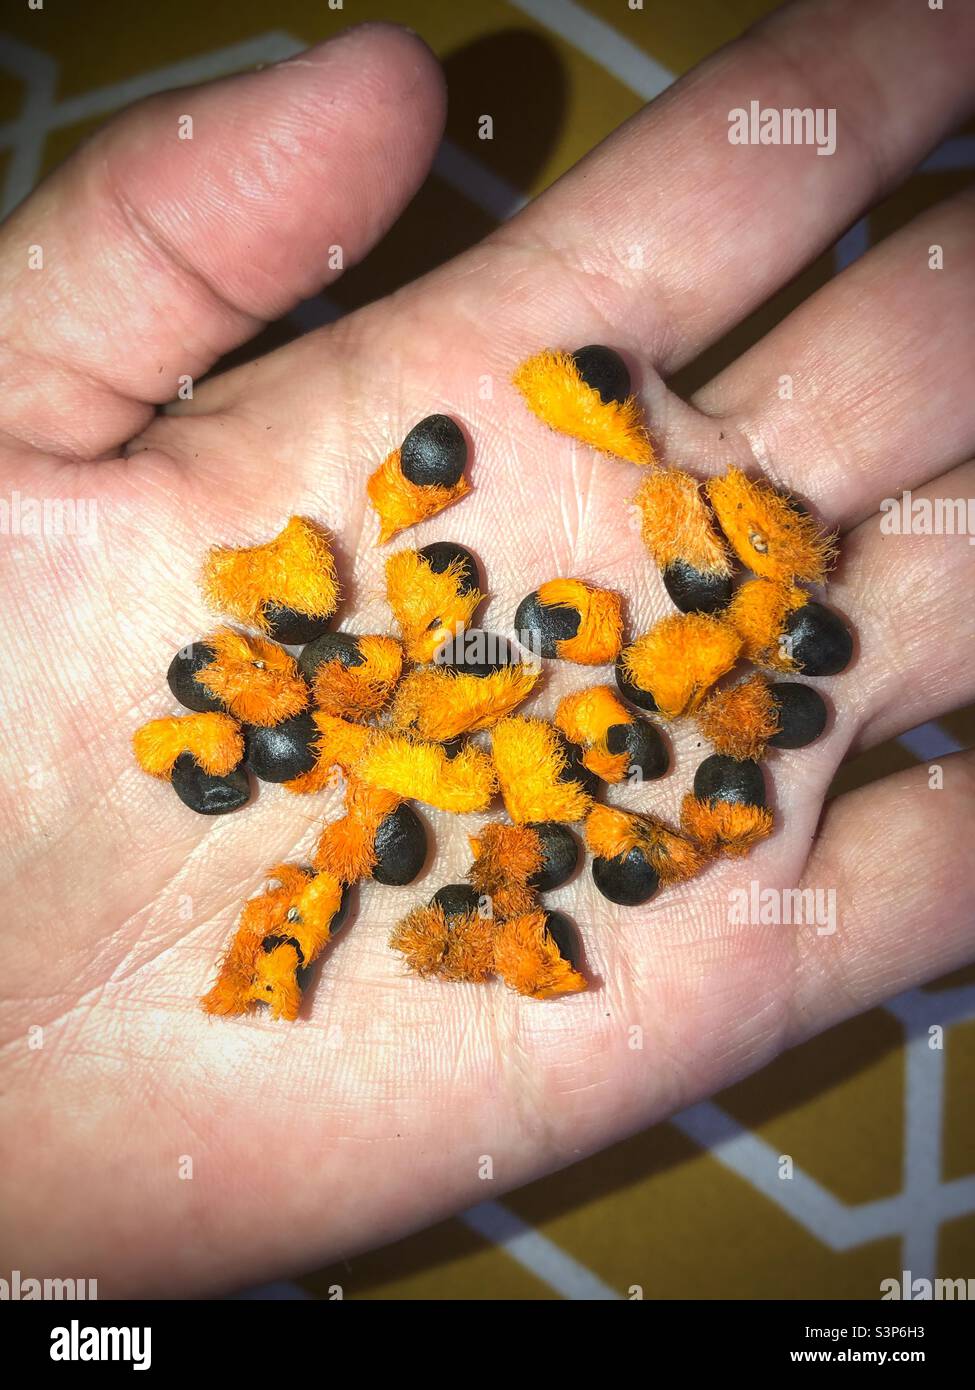 Frisch geerntete strelitzia-Samen mit orangenen Fuzz-Kernen sind noch angebracht Stockfoto